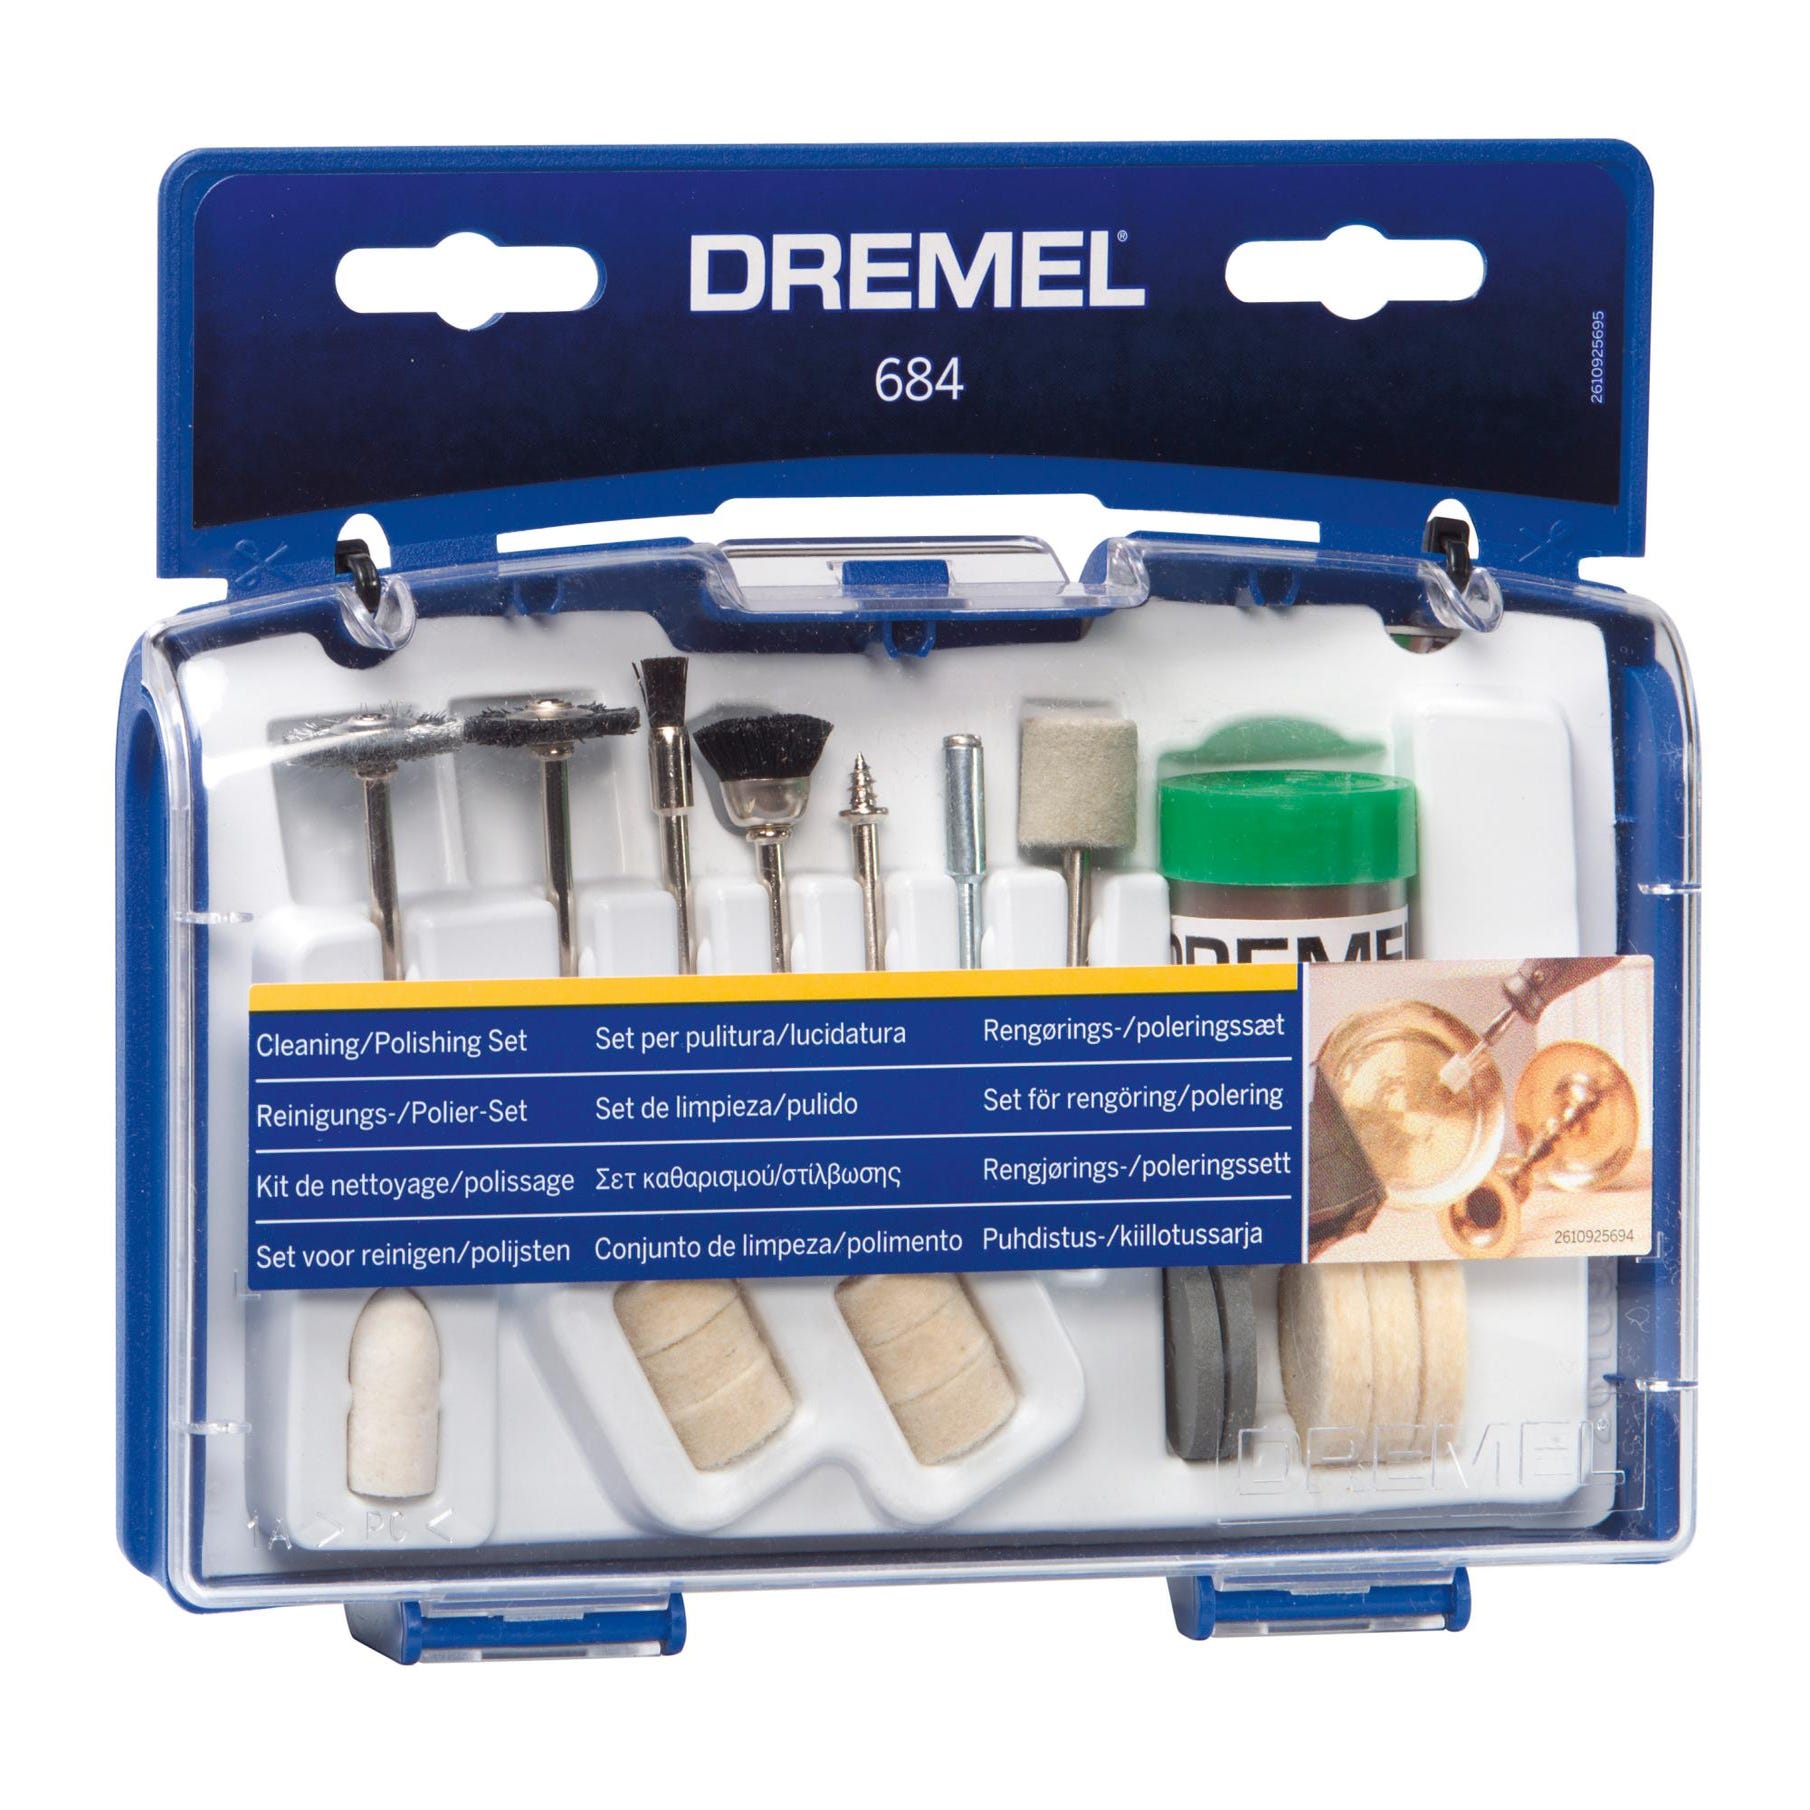 Ensemble d'accessoires pour outils électriques Dremel, outil lointain,  convient pour perceuse Dremel, meulage, polissage, accessoires Dremel, 361